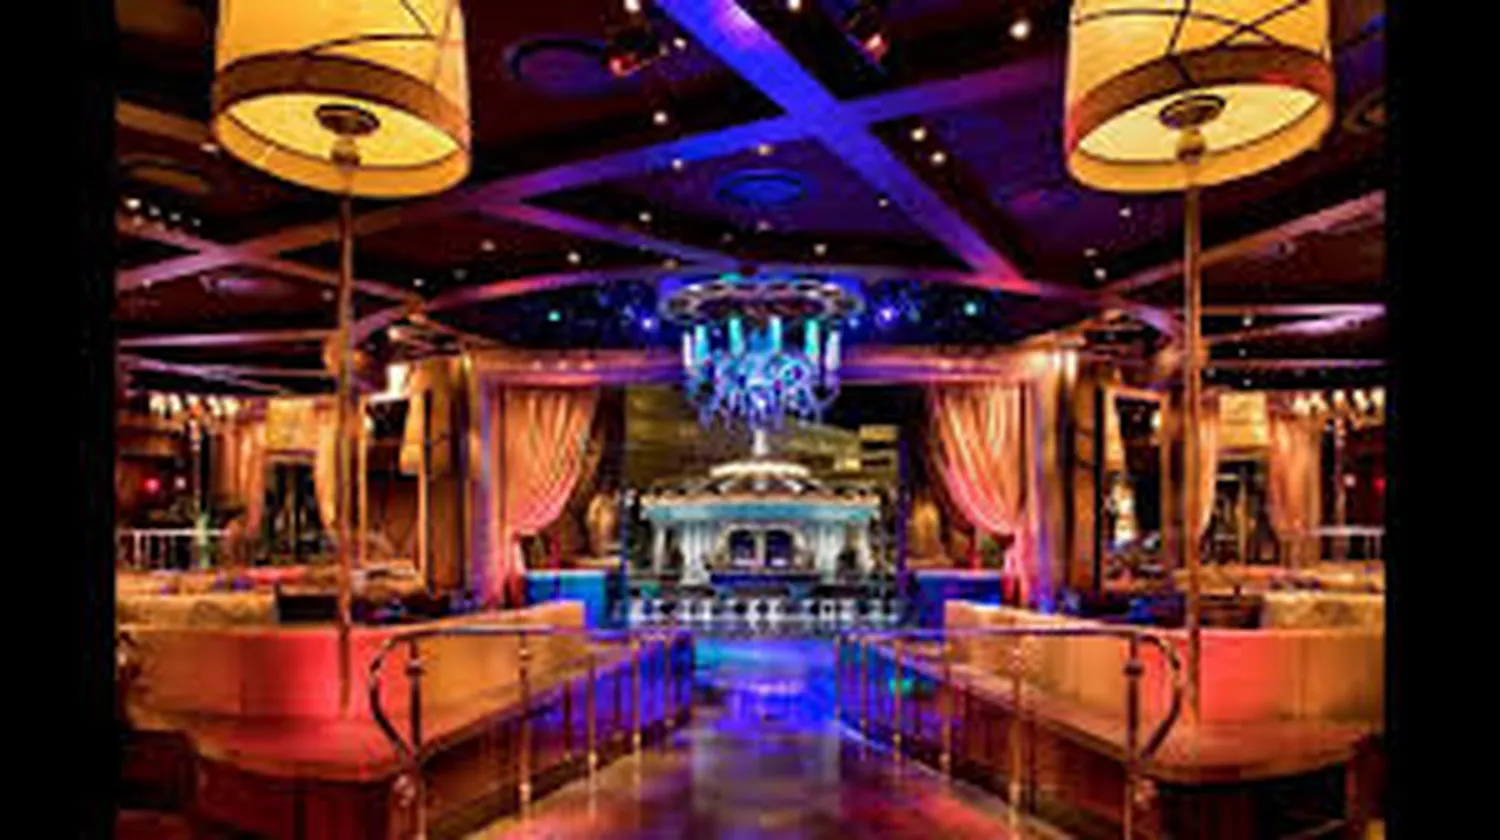 XS nightclub Las Vegas